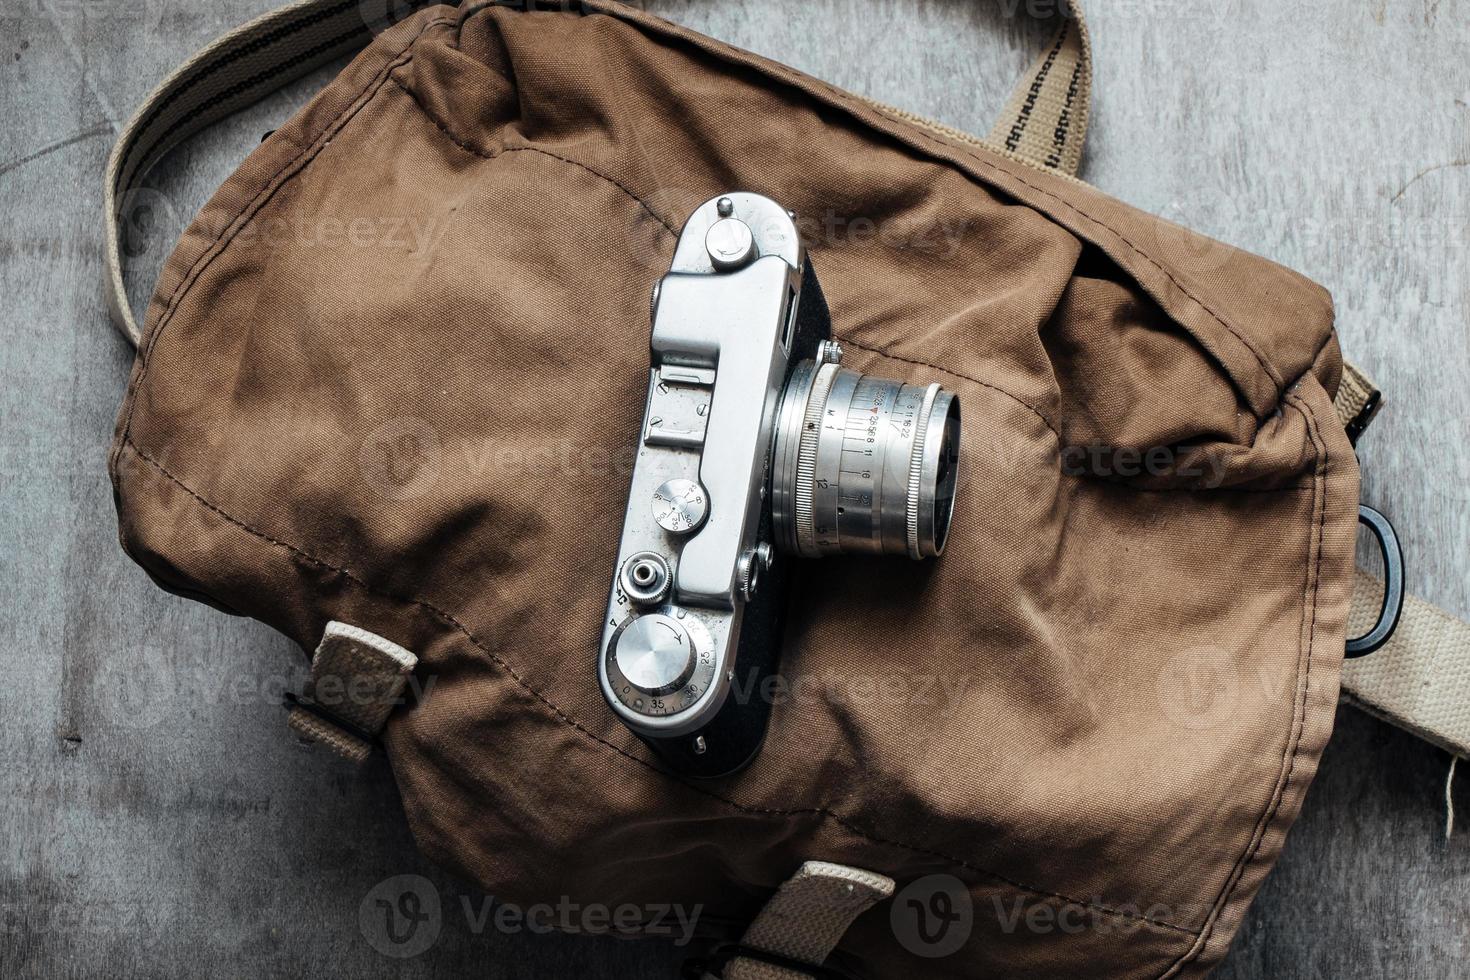 câmera velha na bolsa, componente de design vintage de foto grunge